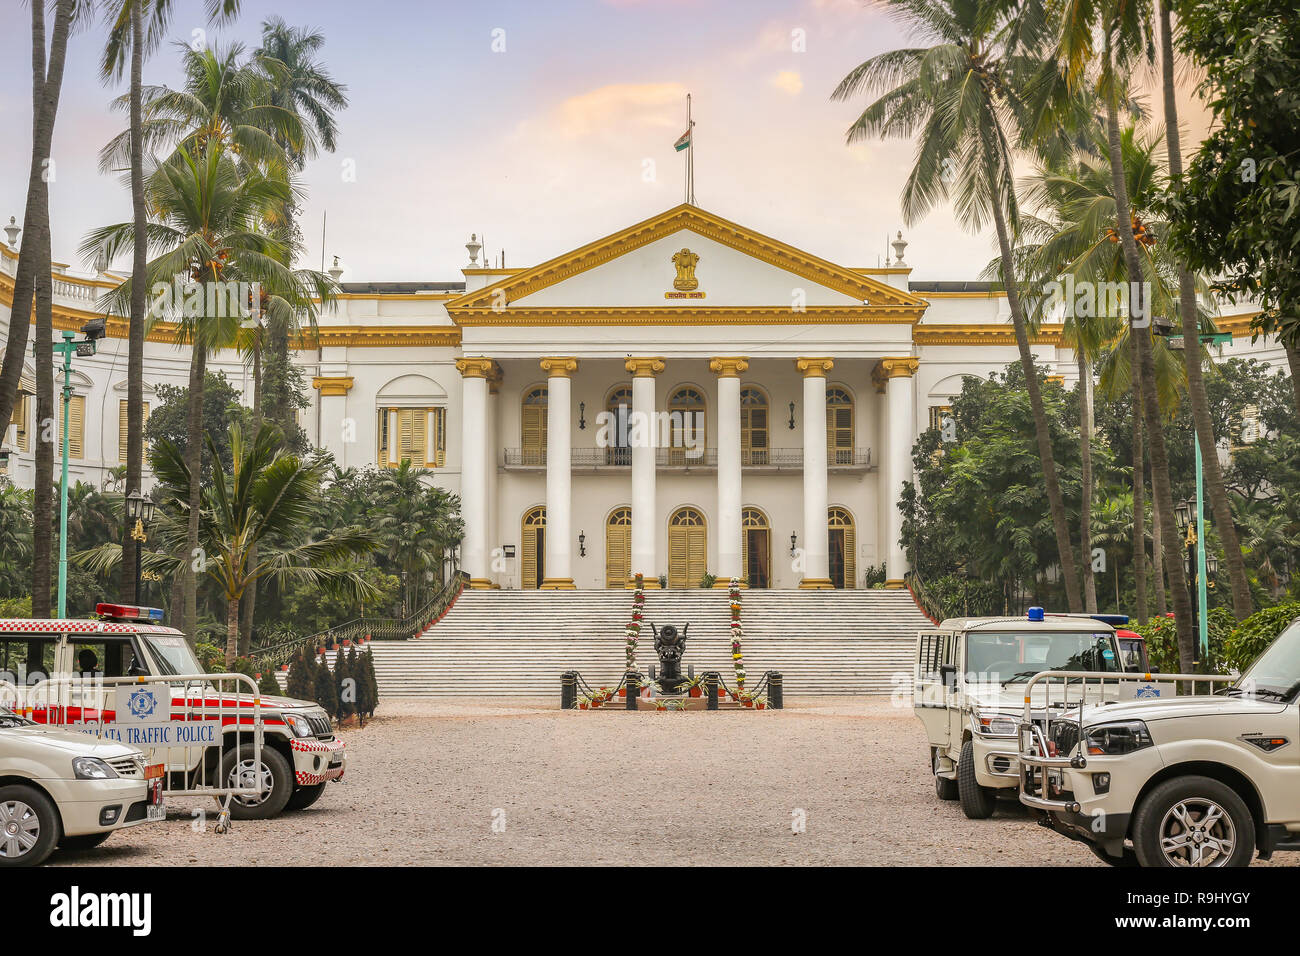 Casa del governatore è un famoso punto di riferimento della città e la classica città antica architettura coloniale struttura che ospita il governatore del Bengala Occidentale in India. Foto Stock